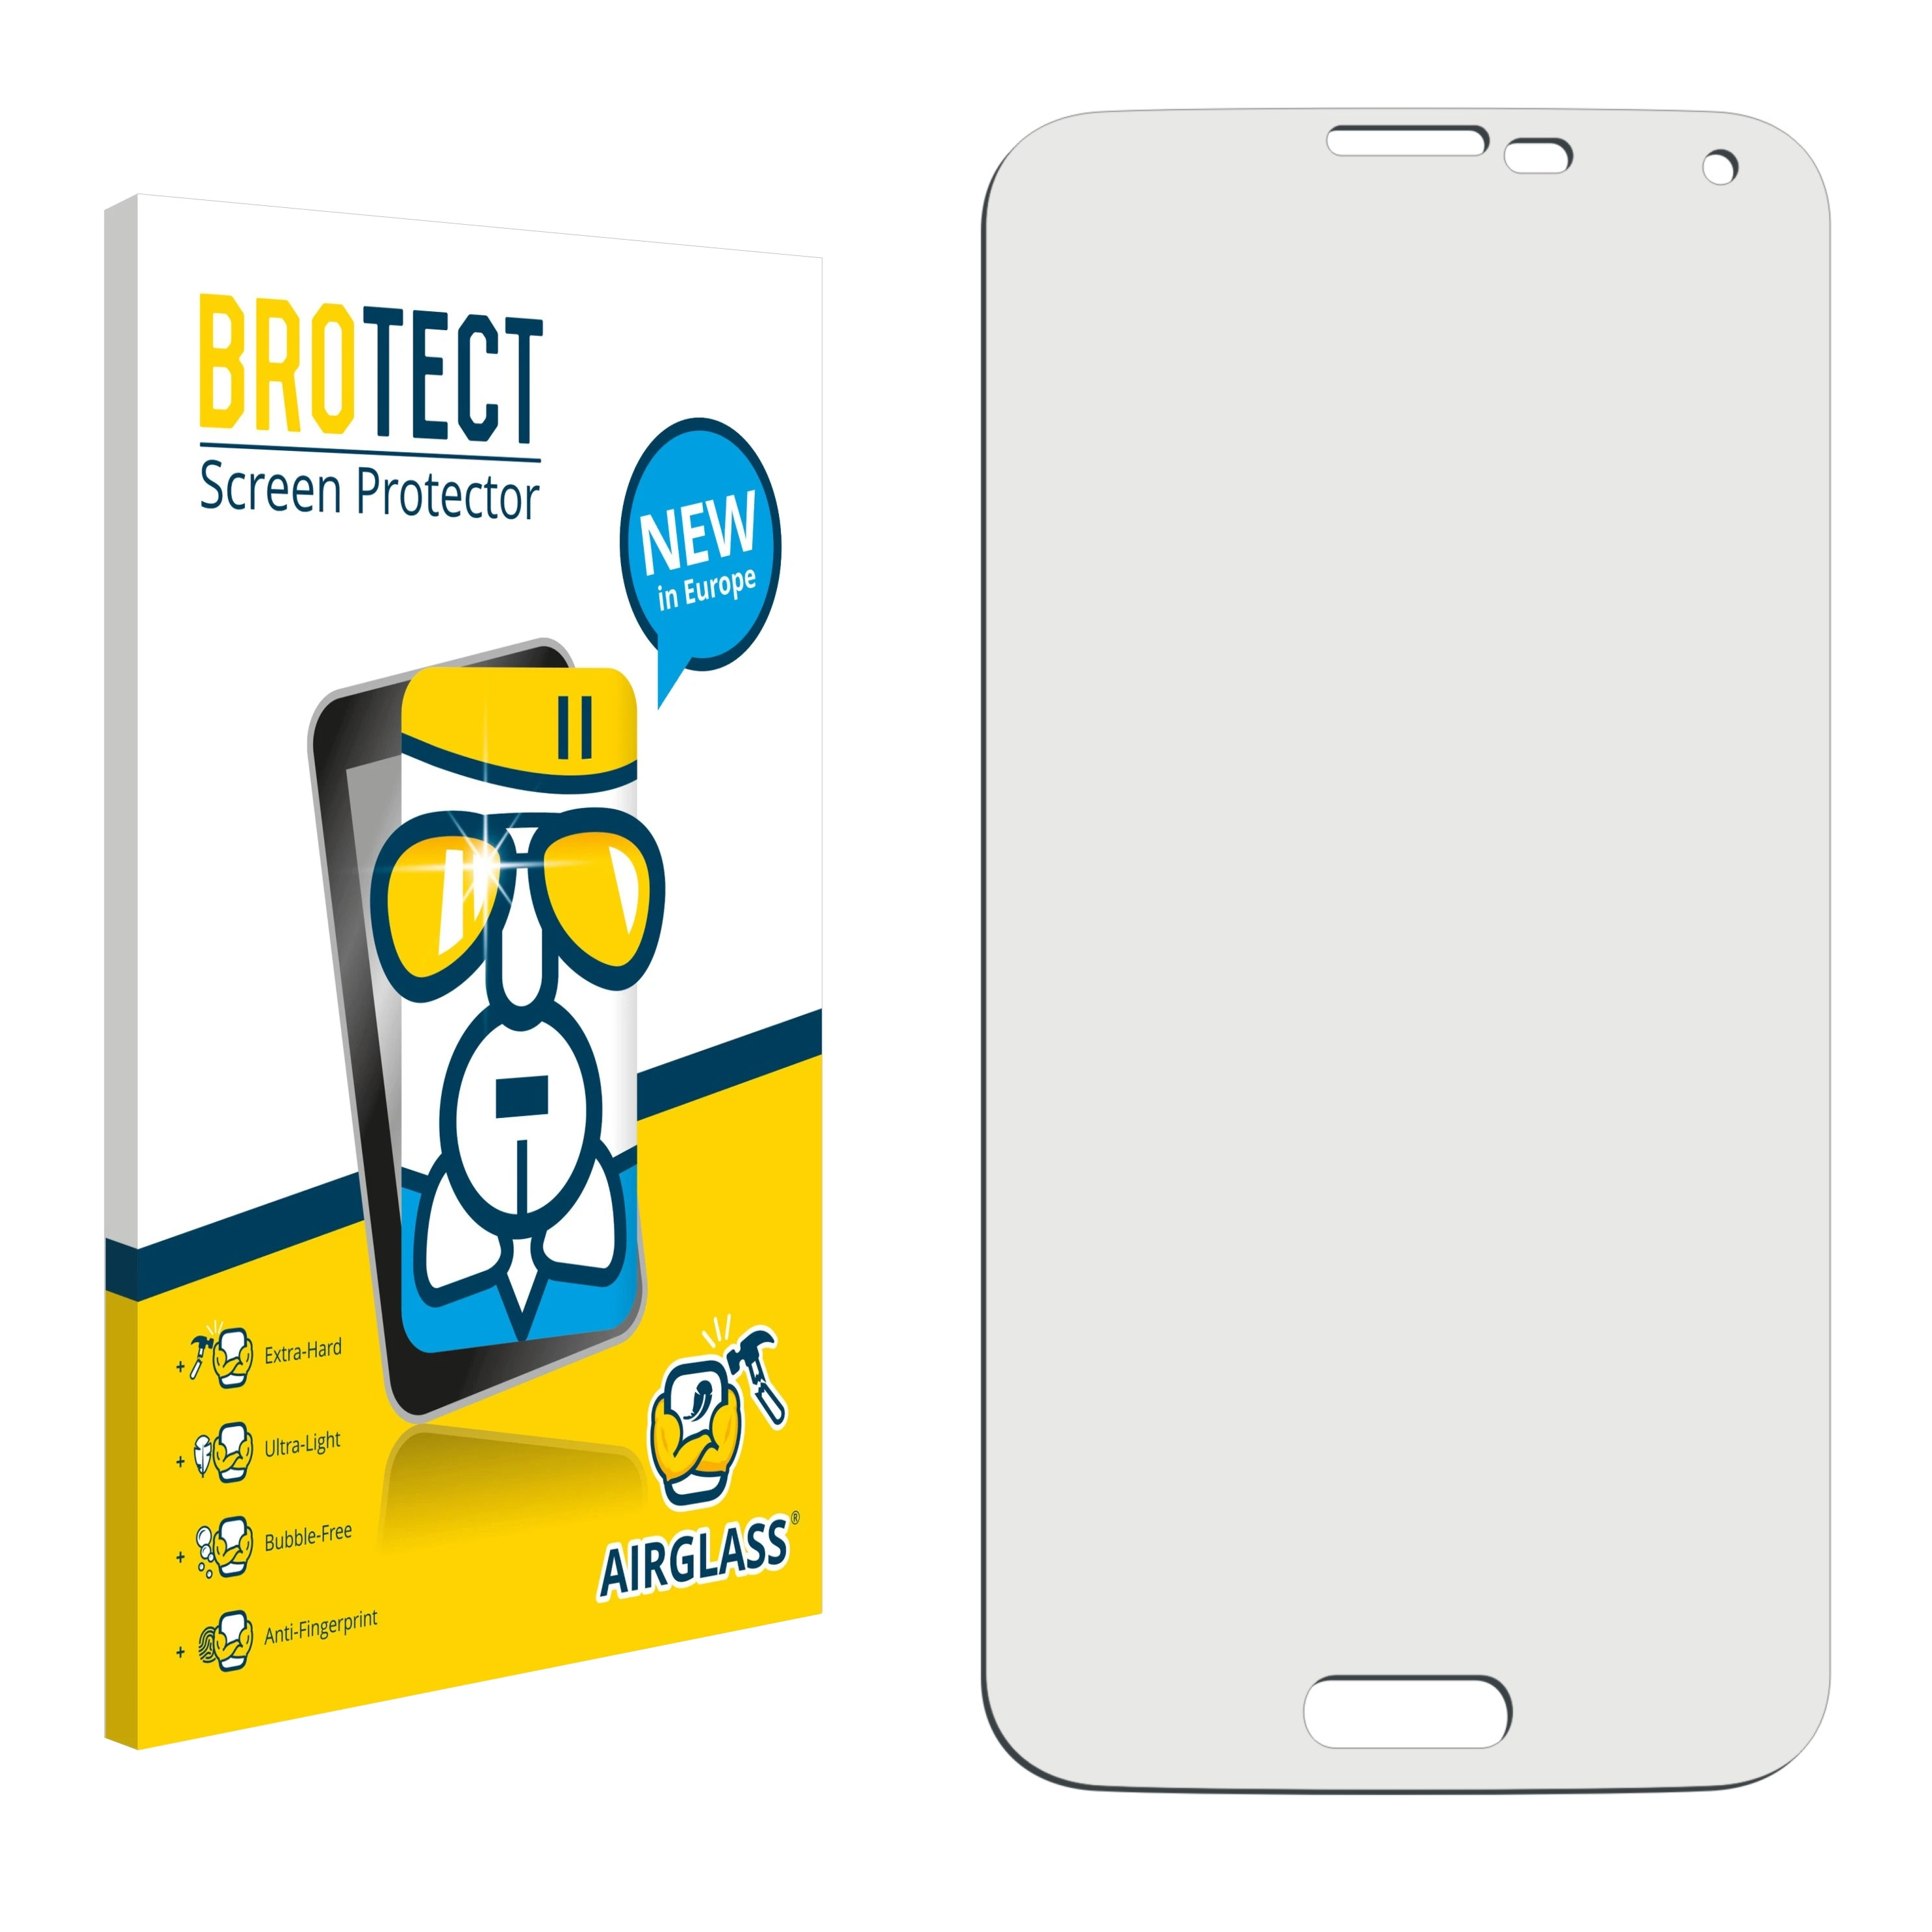 SM-G900F) klare Samsung BROTECT SM-G900I Airglass Schutzfolie(für Galaxy S5